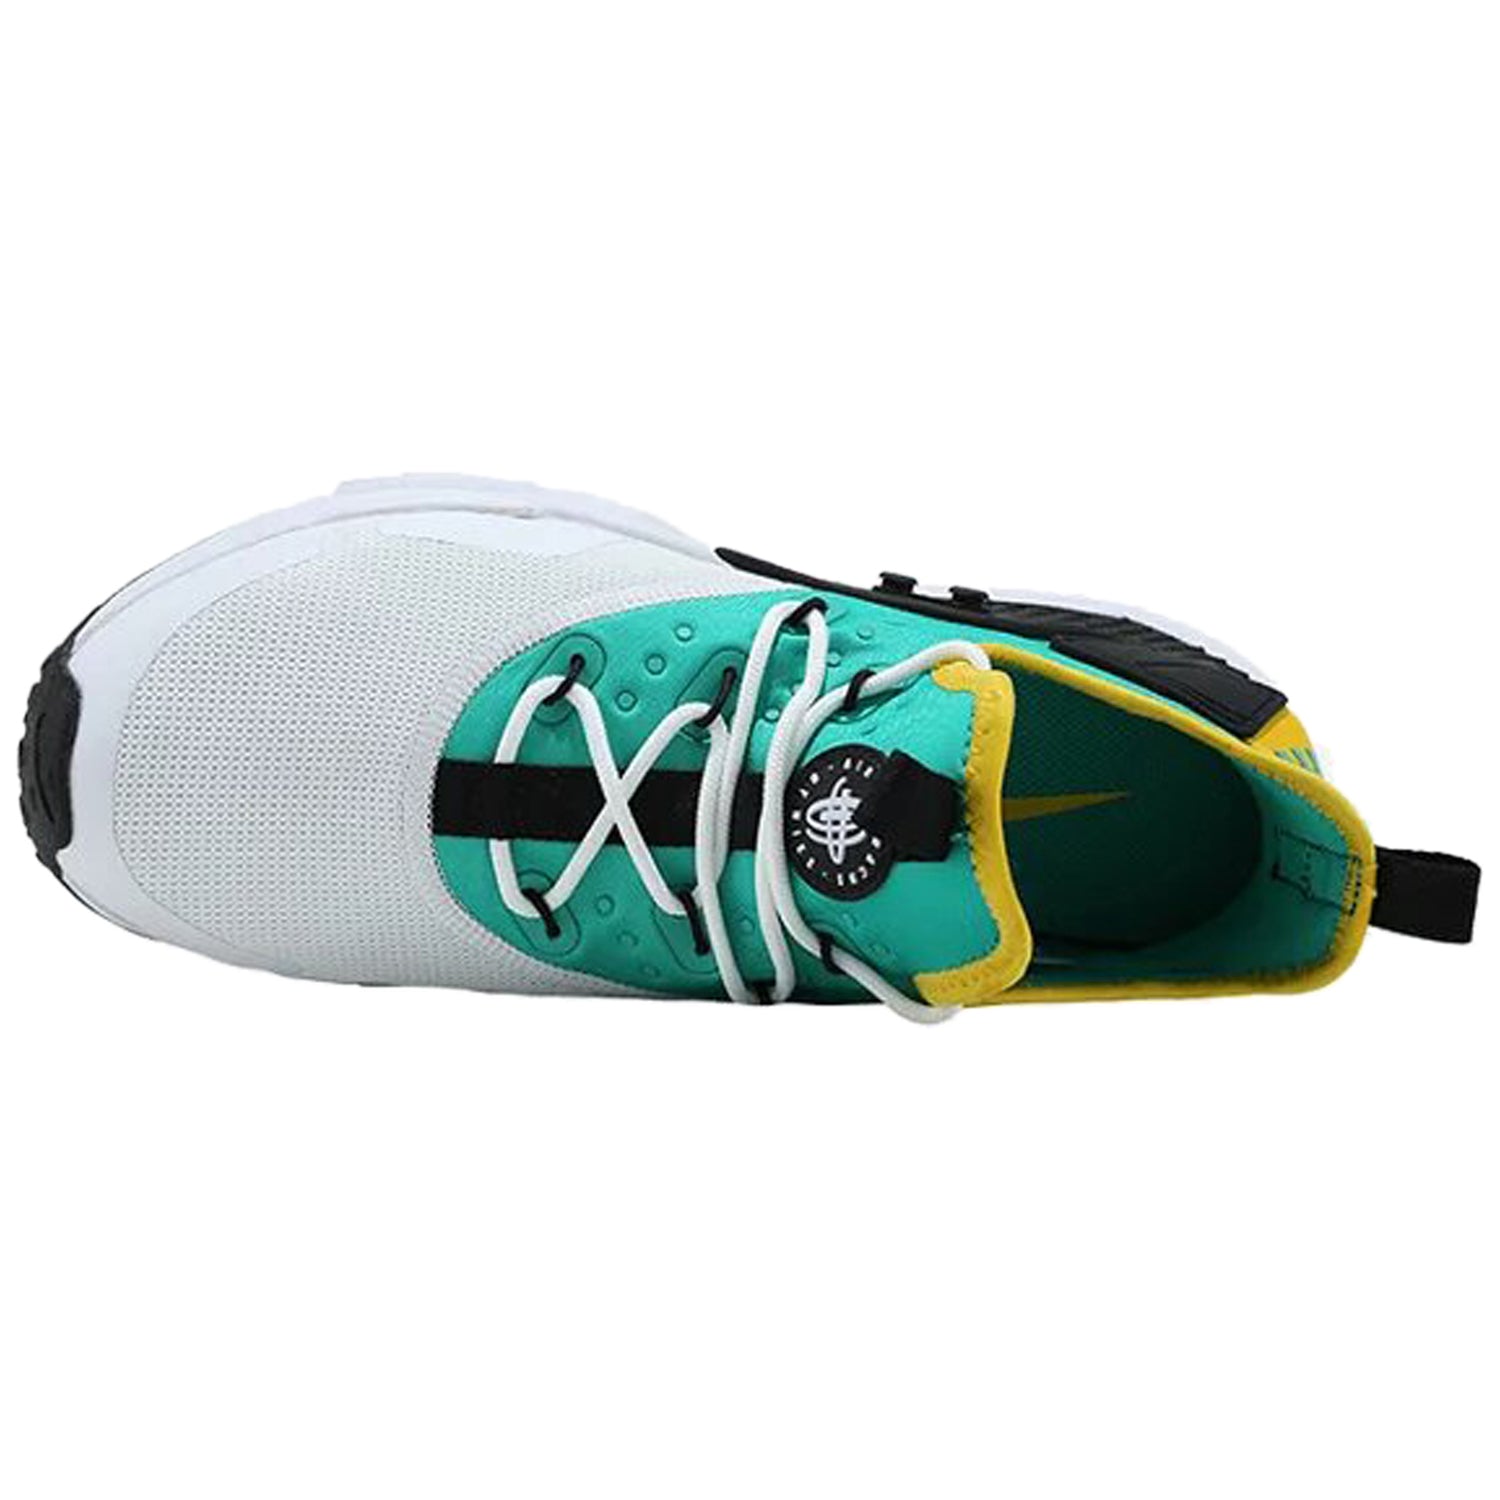 Nike Air Huarache Drift Mens Style : Ah7334-301